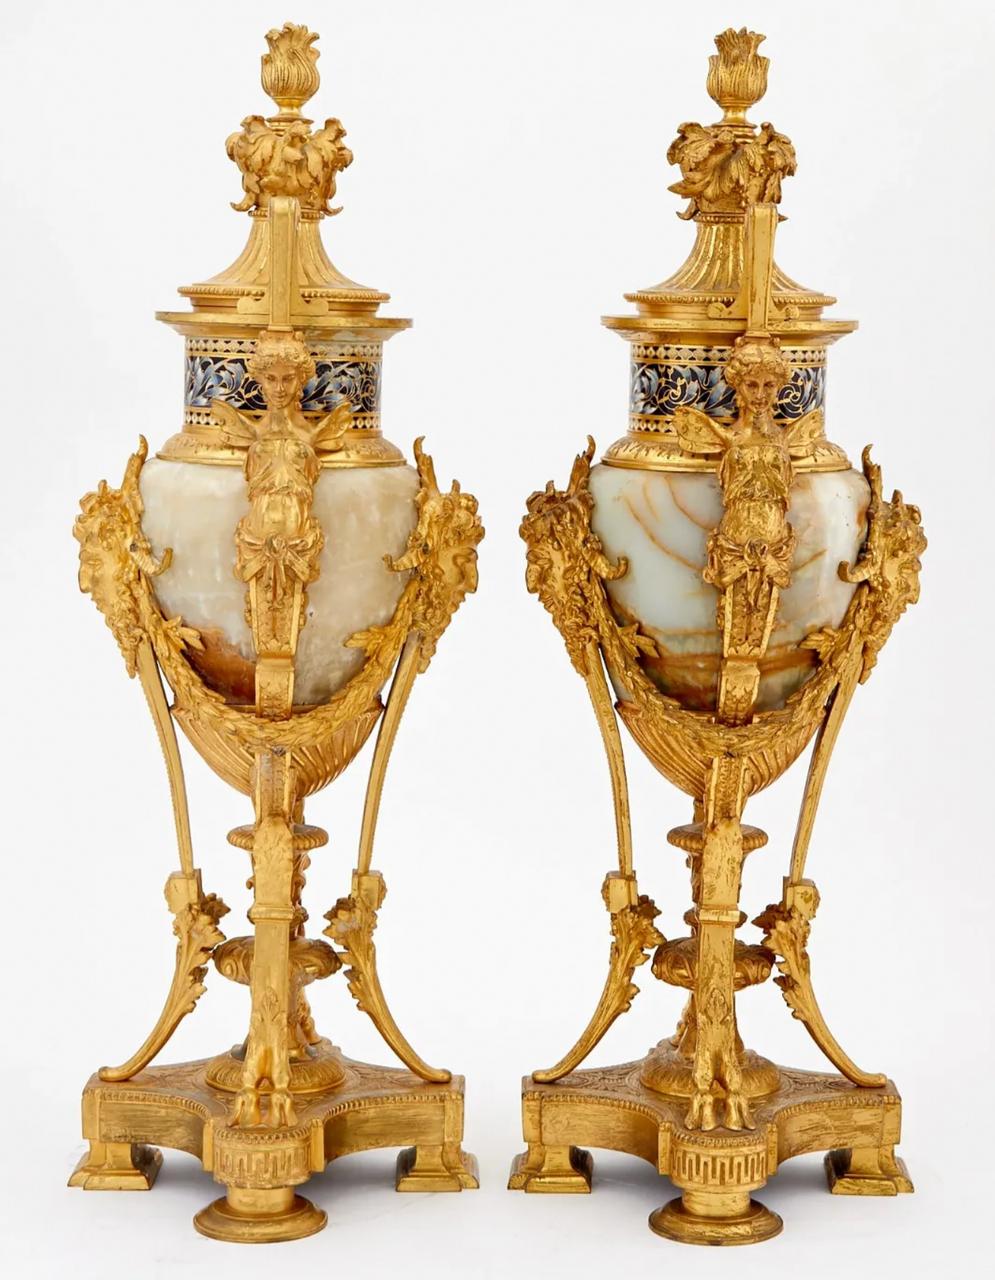 A Renaissance Revival Onyx and Champlevé Planter with Cloisonné Enamel Urns For Sale 2